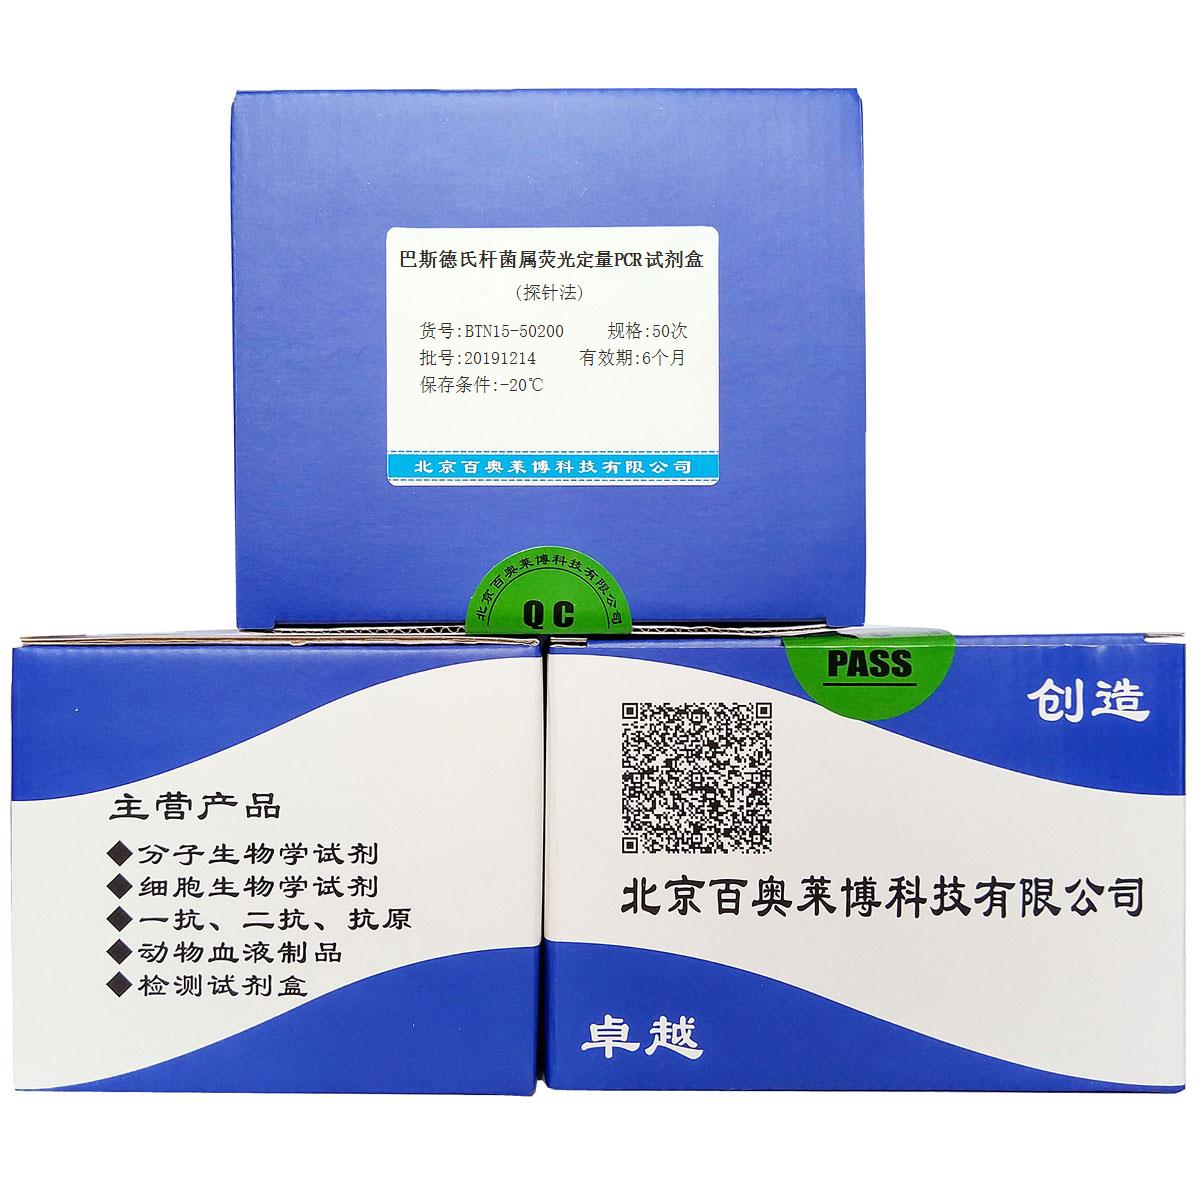 巴斯德氏杆菌属荧光定量PCR试剂盒(探针法)